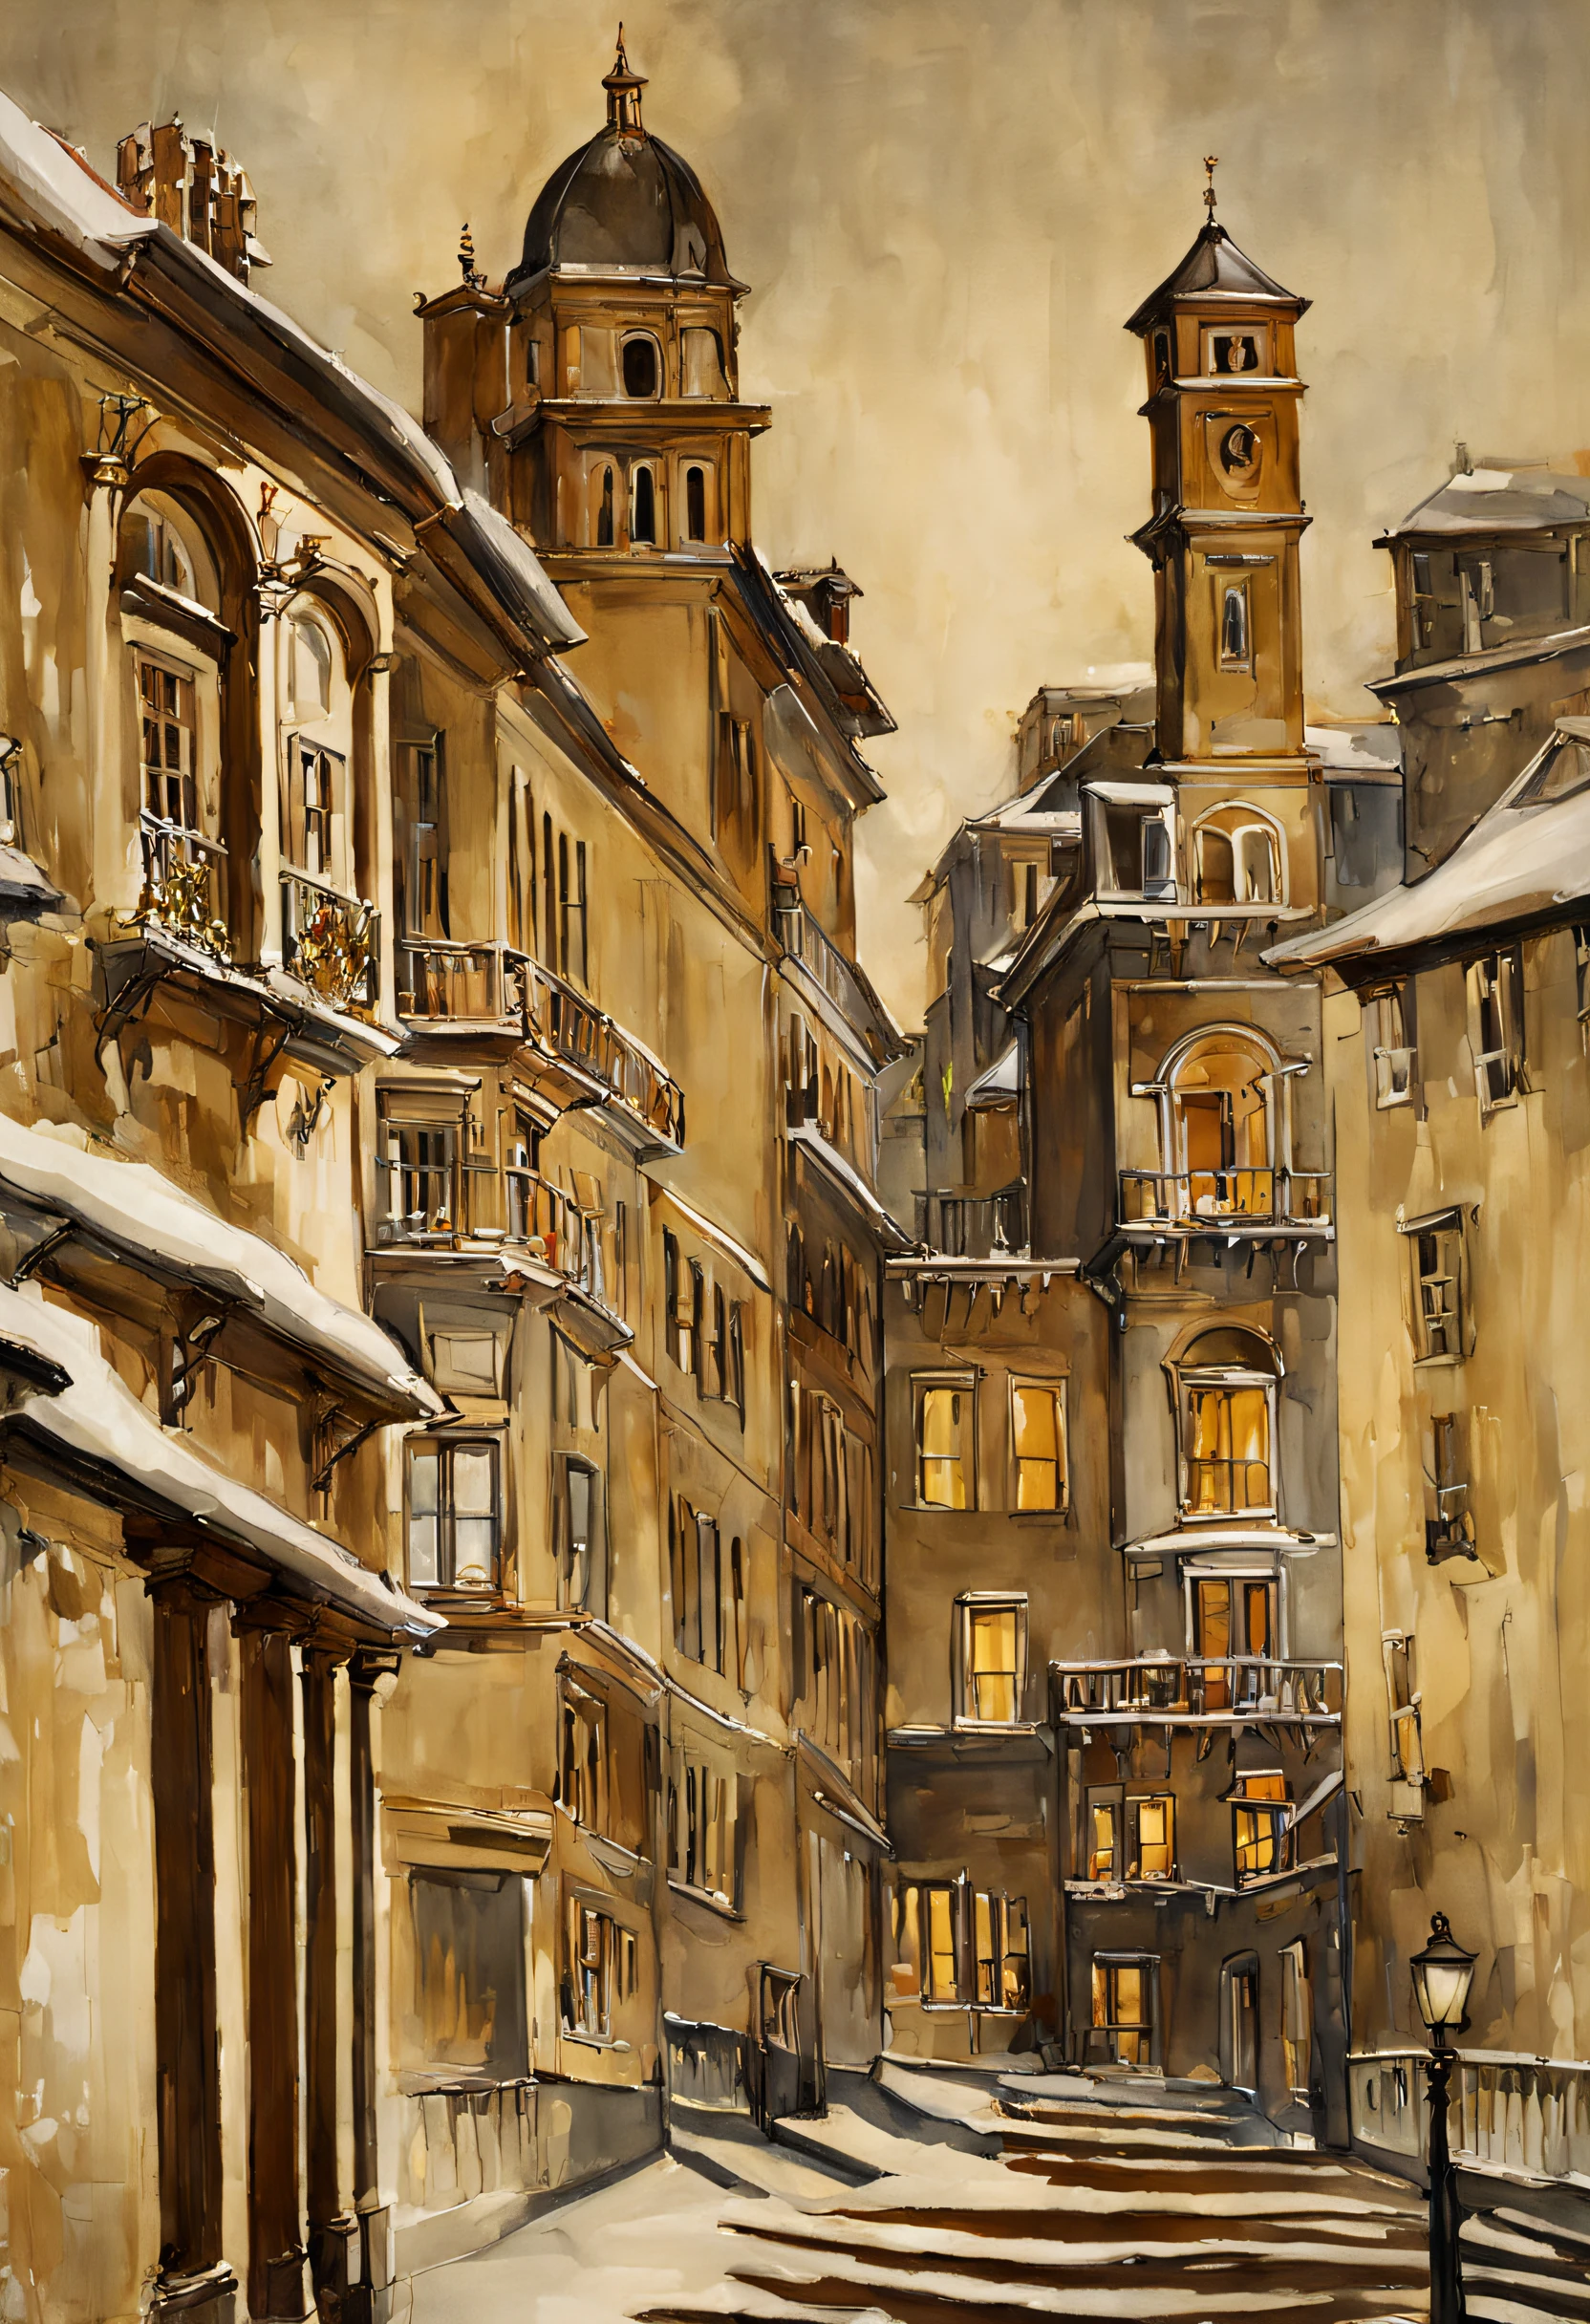 (Acuarela en estilo Sargent)、(de la máxima calidad、obra maestra) Luz de noche , invierno y nieve , edifico viejo, elegante y viejo , un poco deteriorado ,